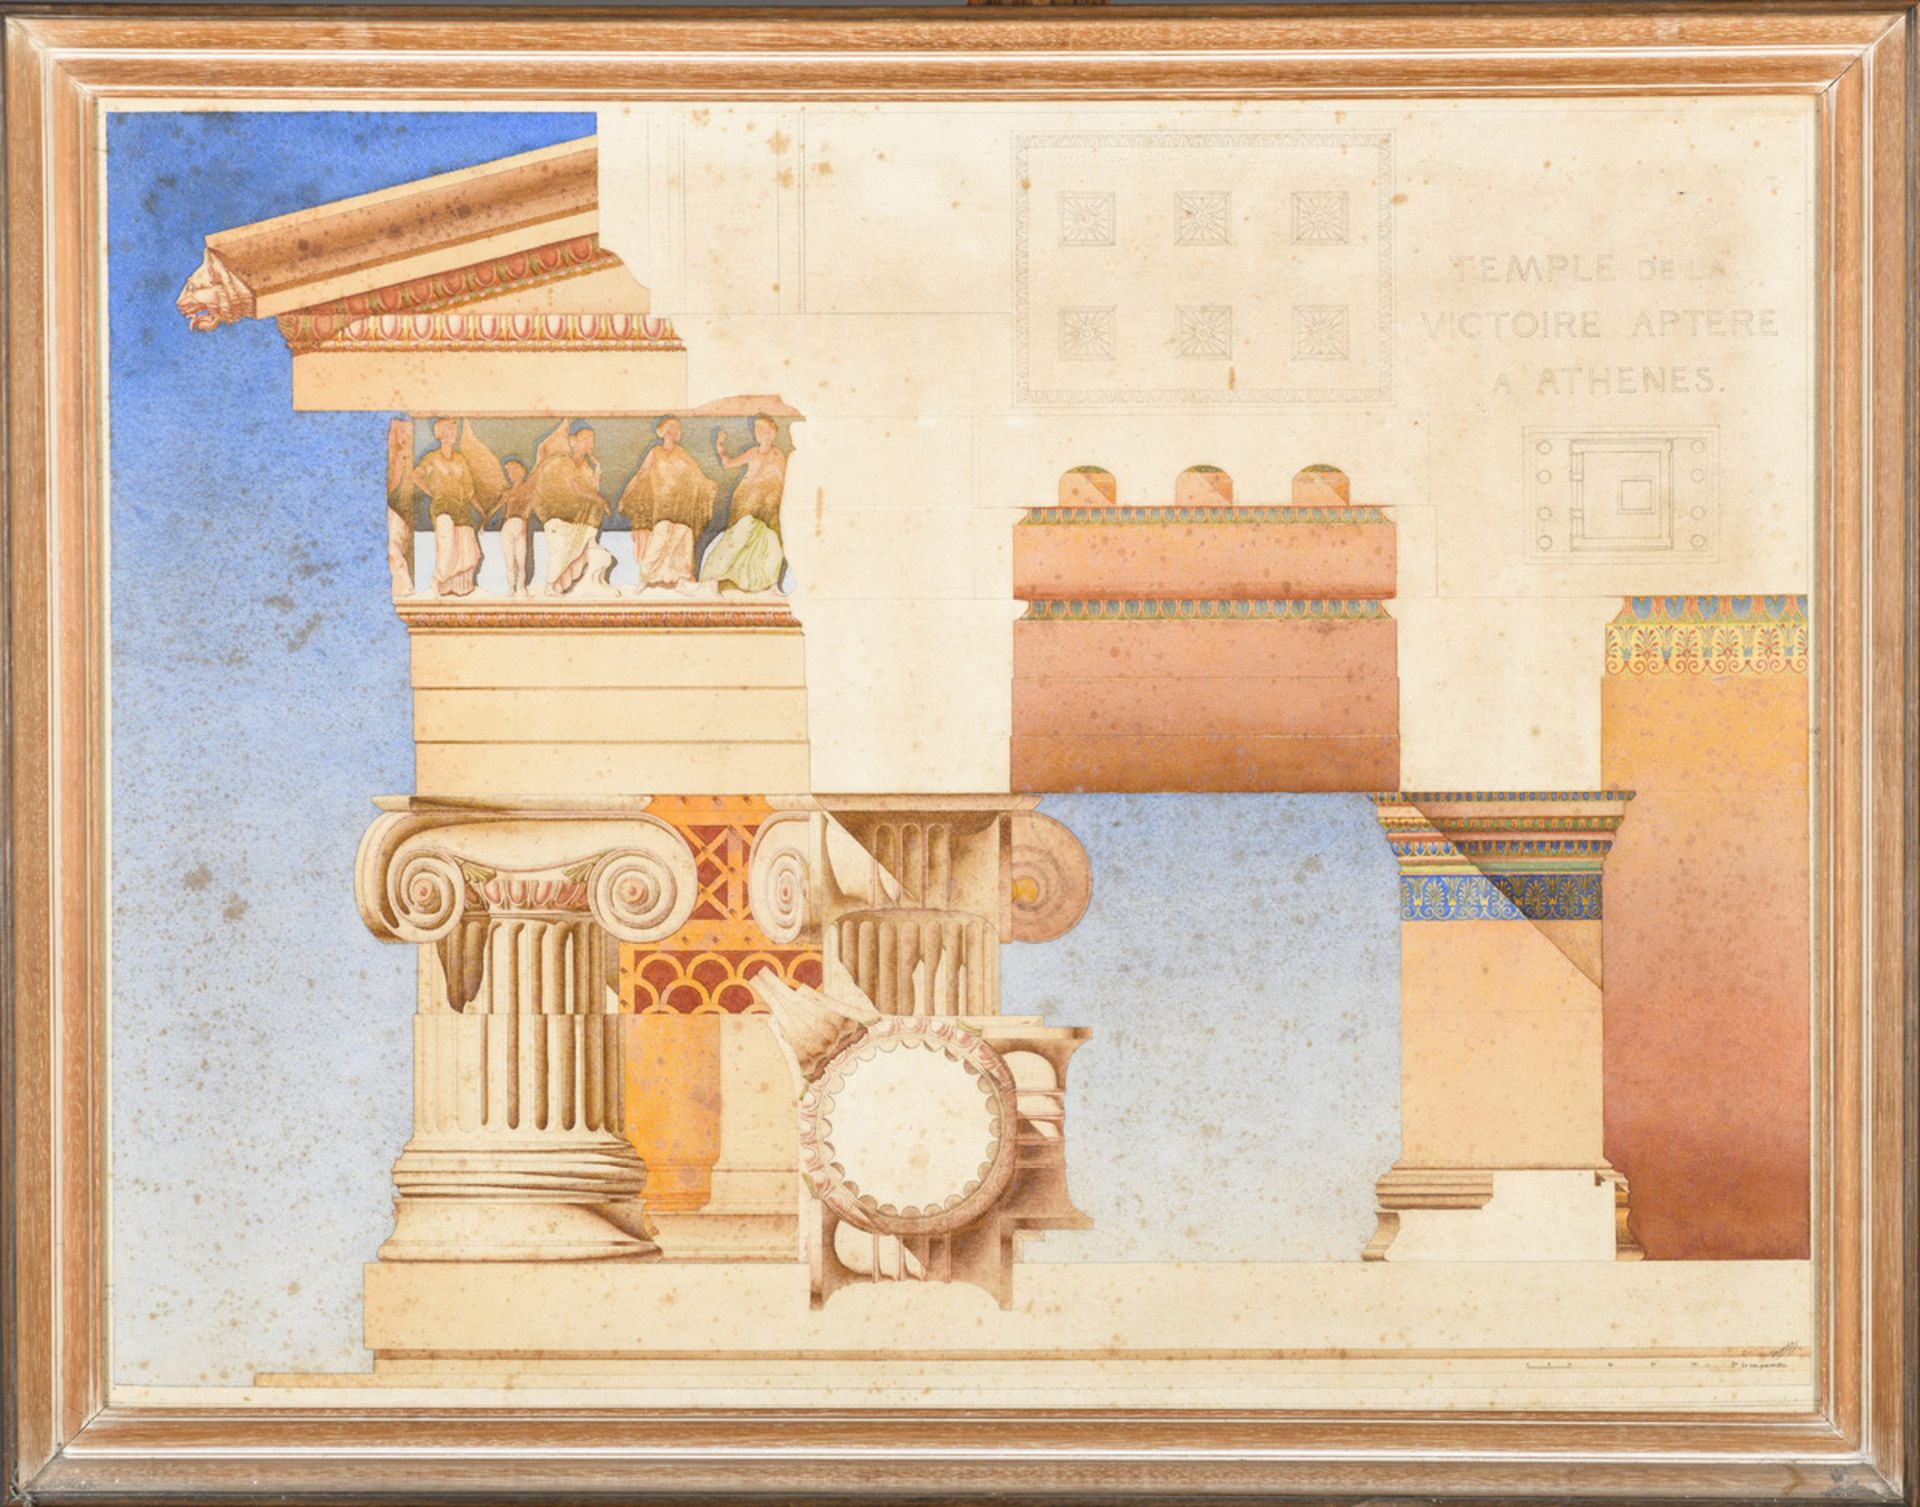 Vereecke 1921: architectural drawing 'Temple de la victoire Aptere ‡ AthÈne' (63x82cm) (*) - Bild 2 aus 5